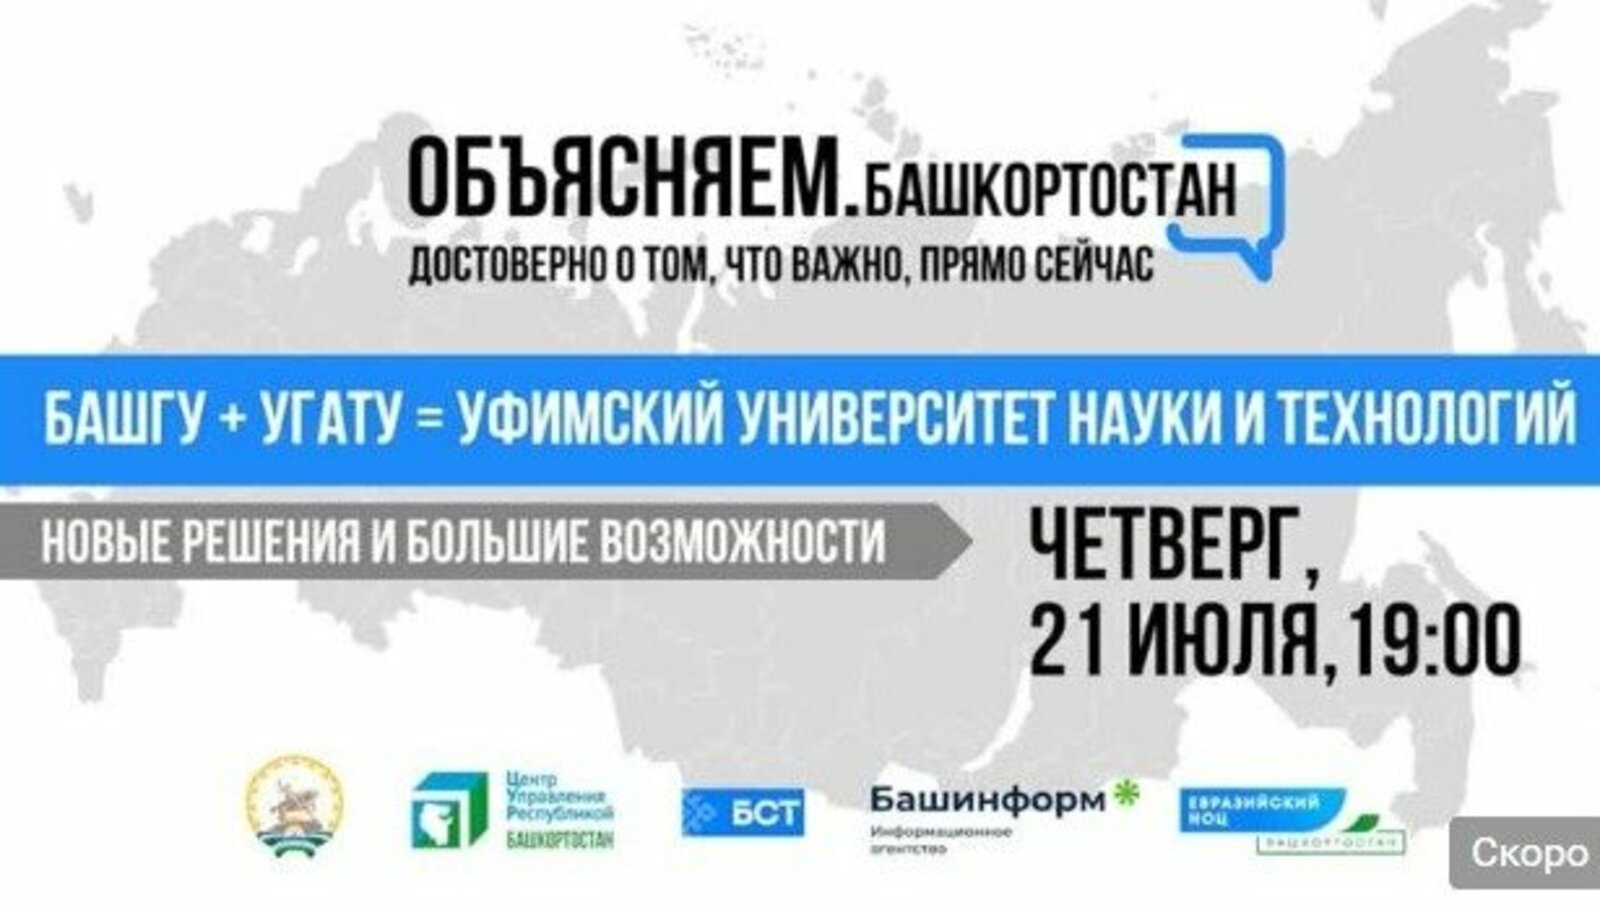 На канале БСТ пройдет брифинг по объединению вузов Башкортостана